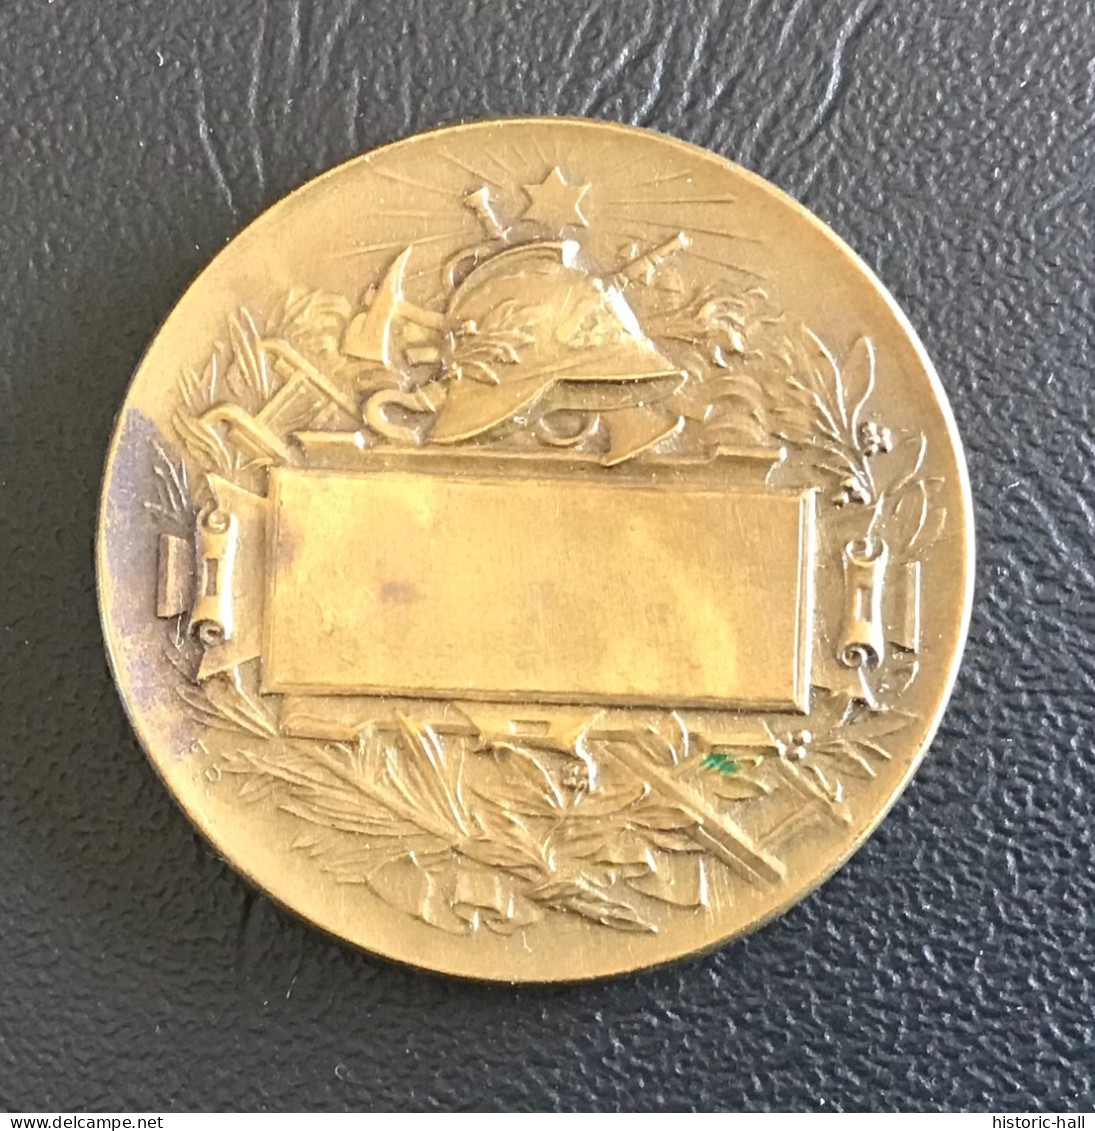 Medaille Dit « de Table » - Sapeur Pompier XIXe - Bronze - Firemen